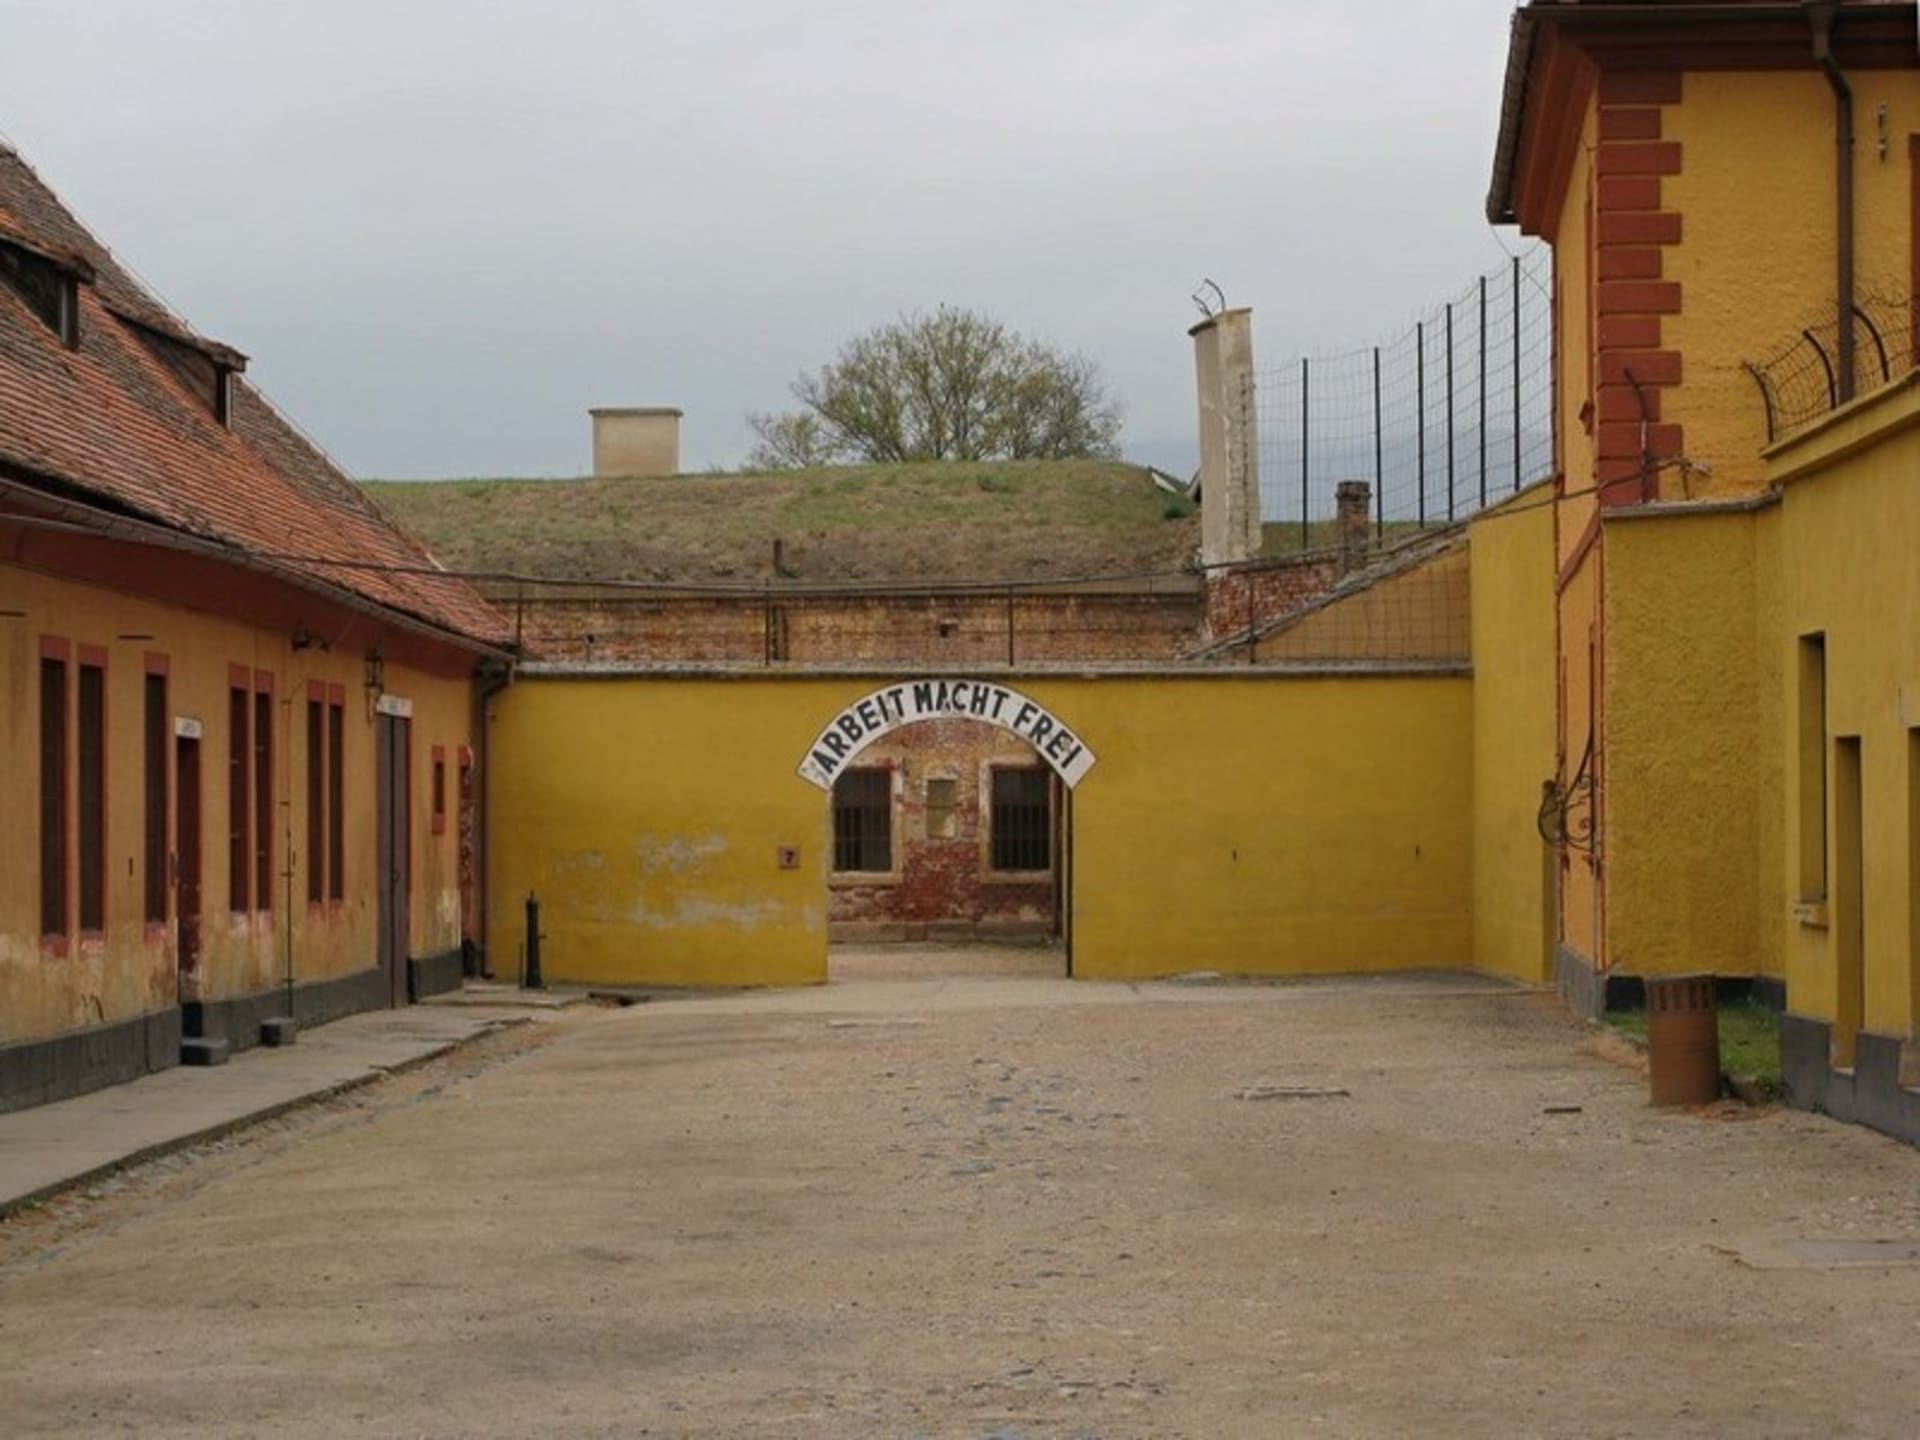 Správní dvůr v Malé pevnosti Terezín, která sloužila jako koncentrační tábor.